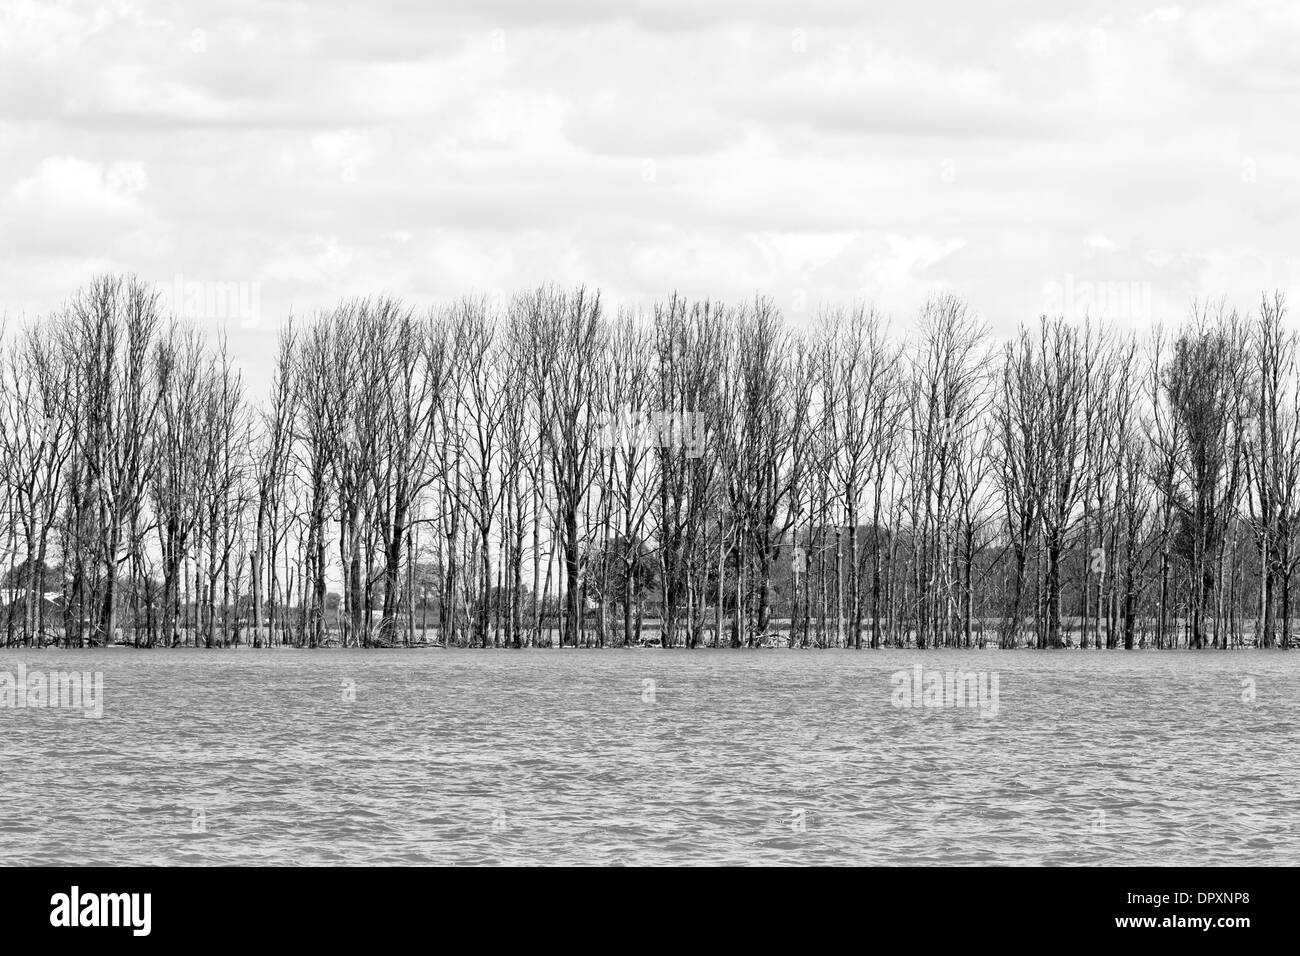 Reihe von Bäumen in überfluteten Landschaft - schwarz / weiß Bild Stockfoto